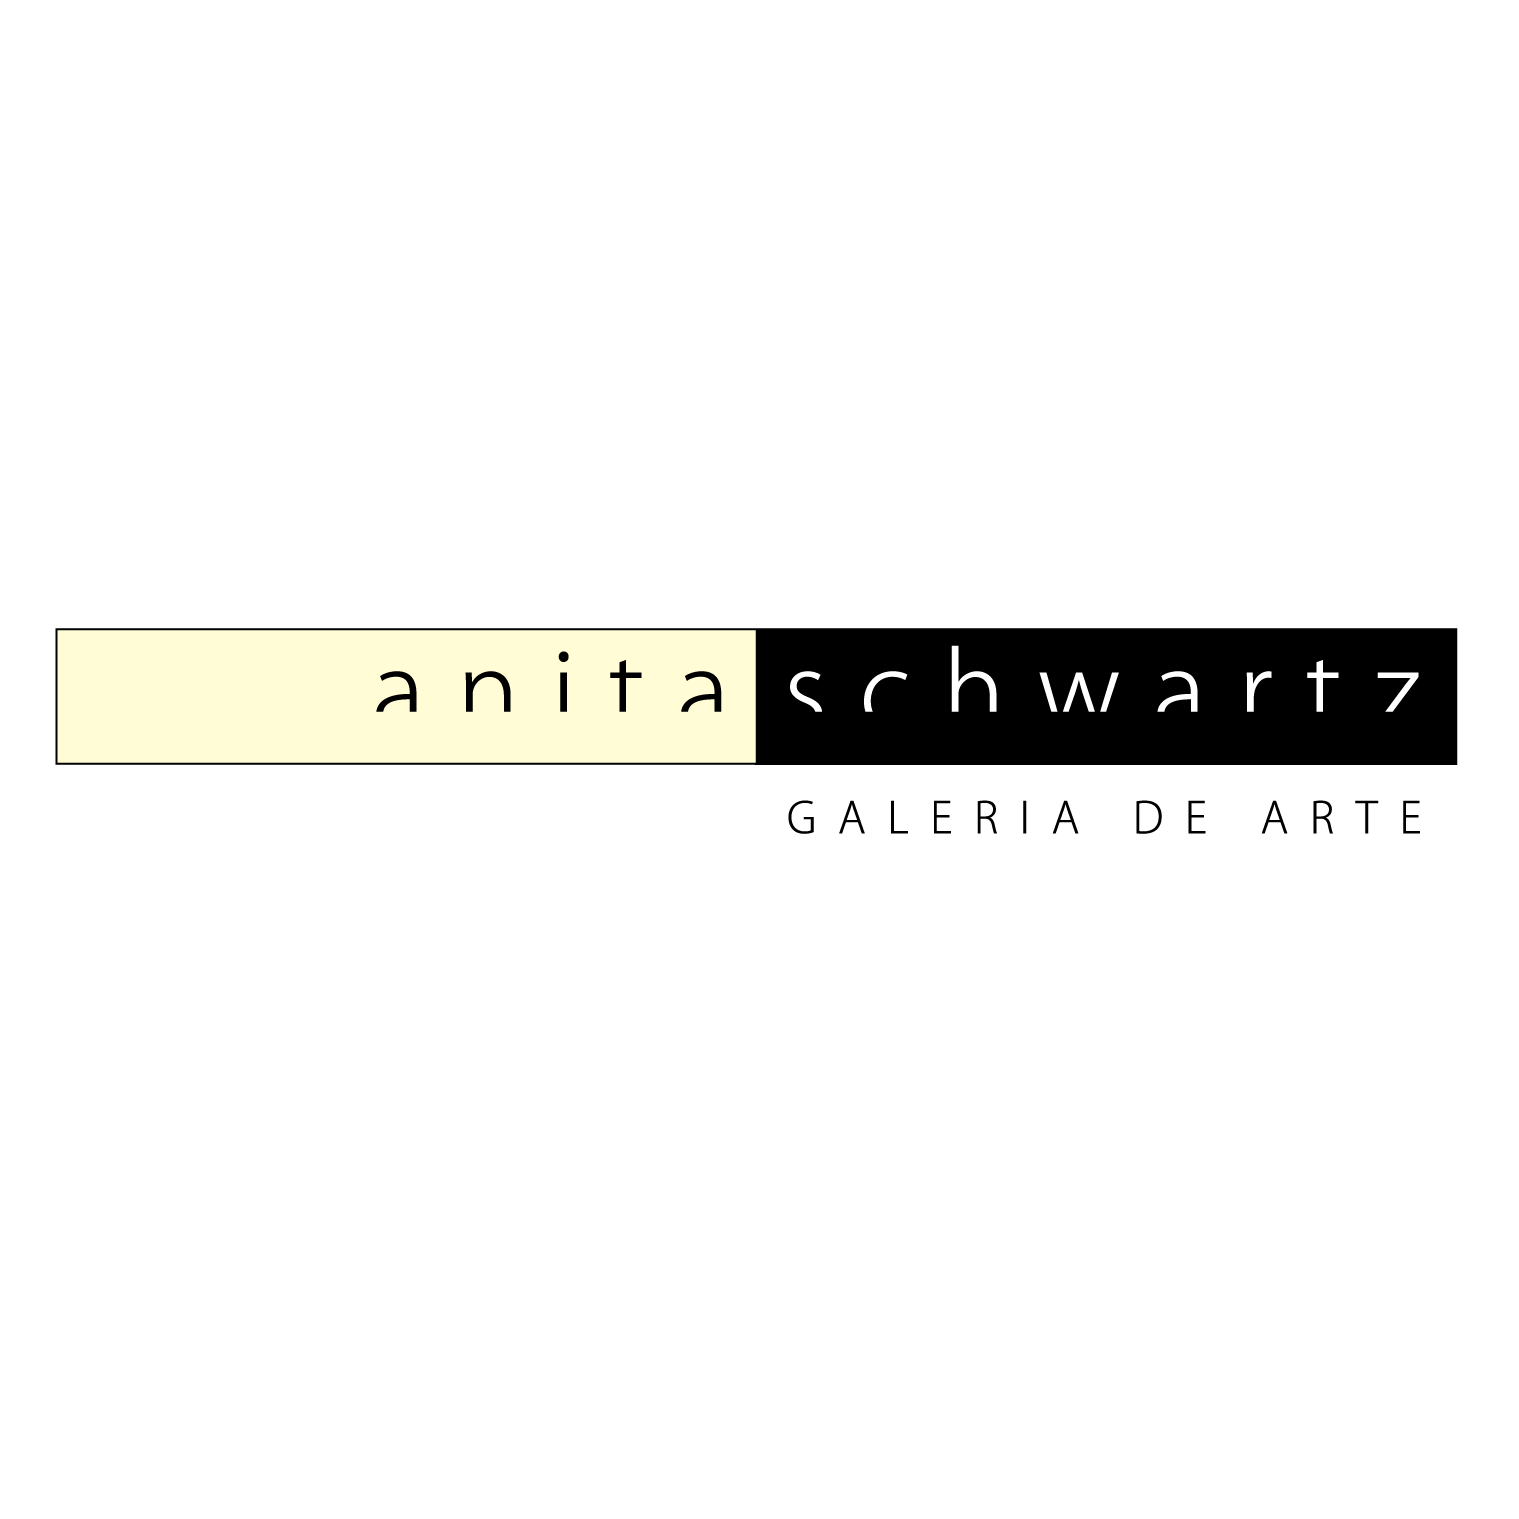 ANITA SCHWARTZ